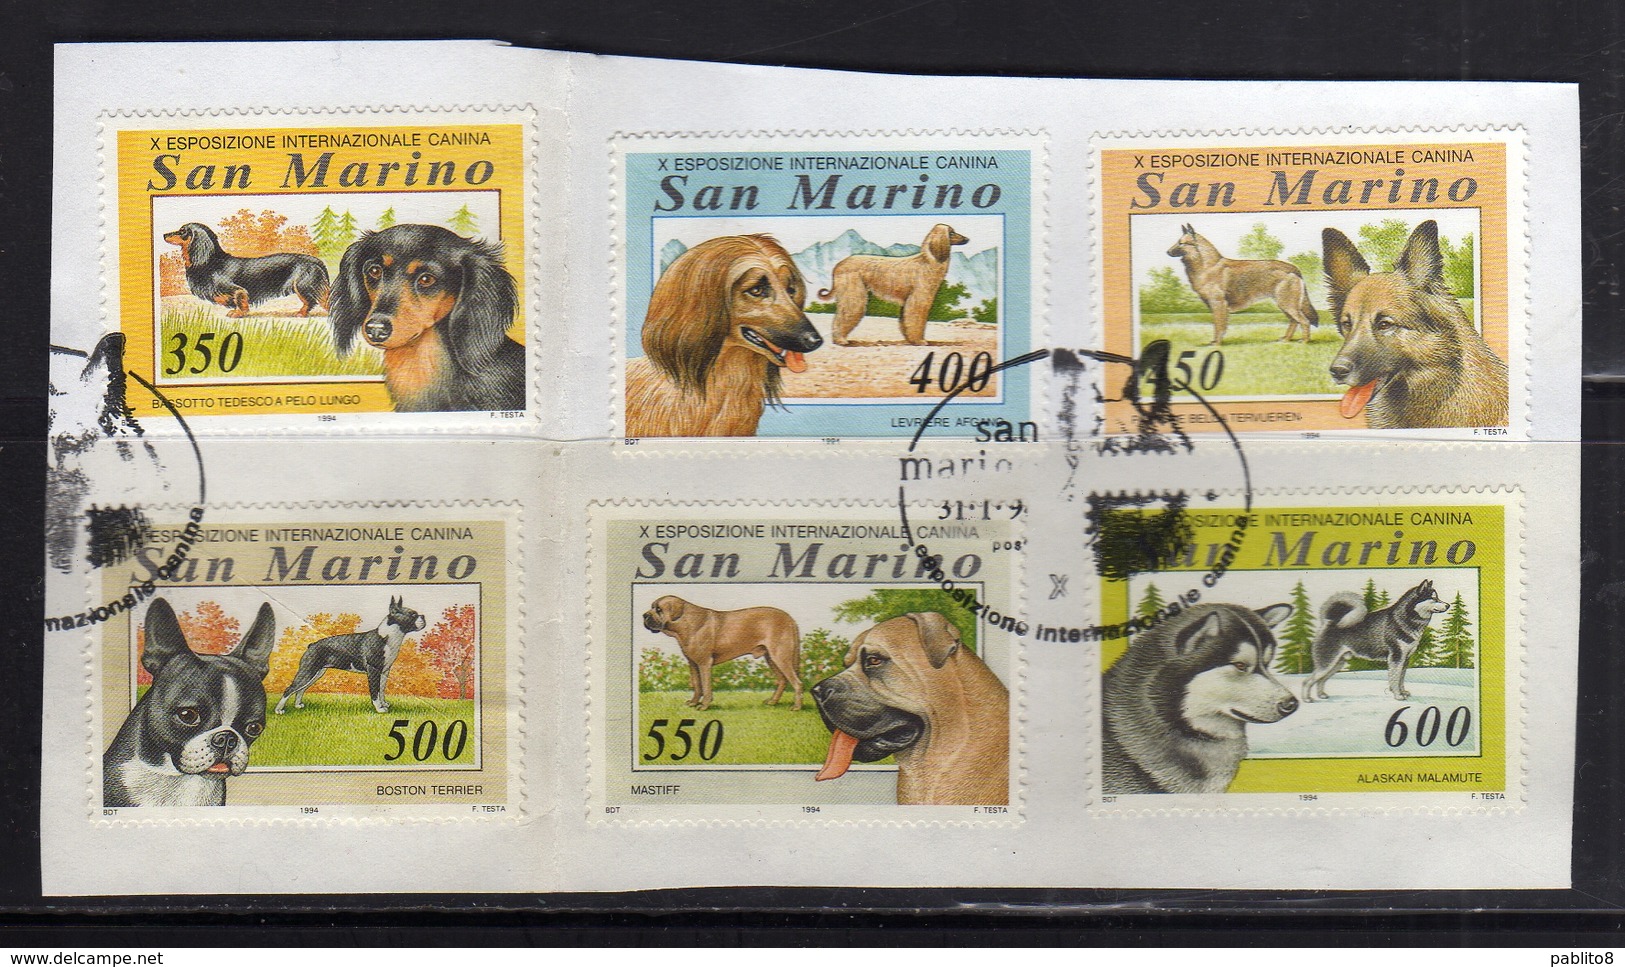 REPUBBLICA DI SAN MARINO 1994 ESPOSIZIONE CANINA CANI DOGS SERIE COMPLETA COMPLETE SET USATA USED OBLITERE' - Gebraucht